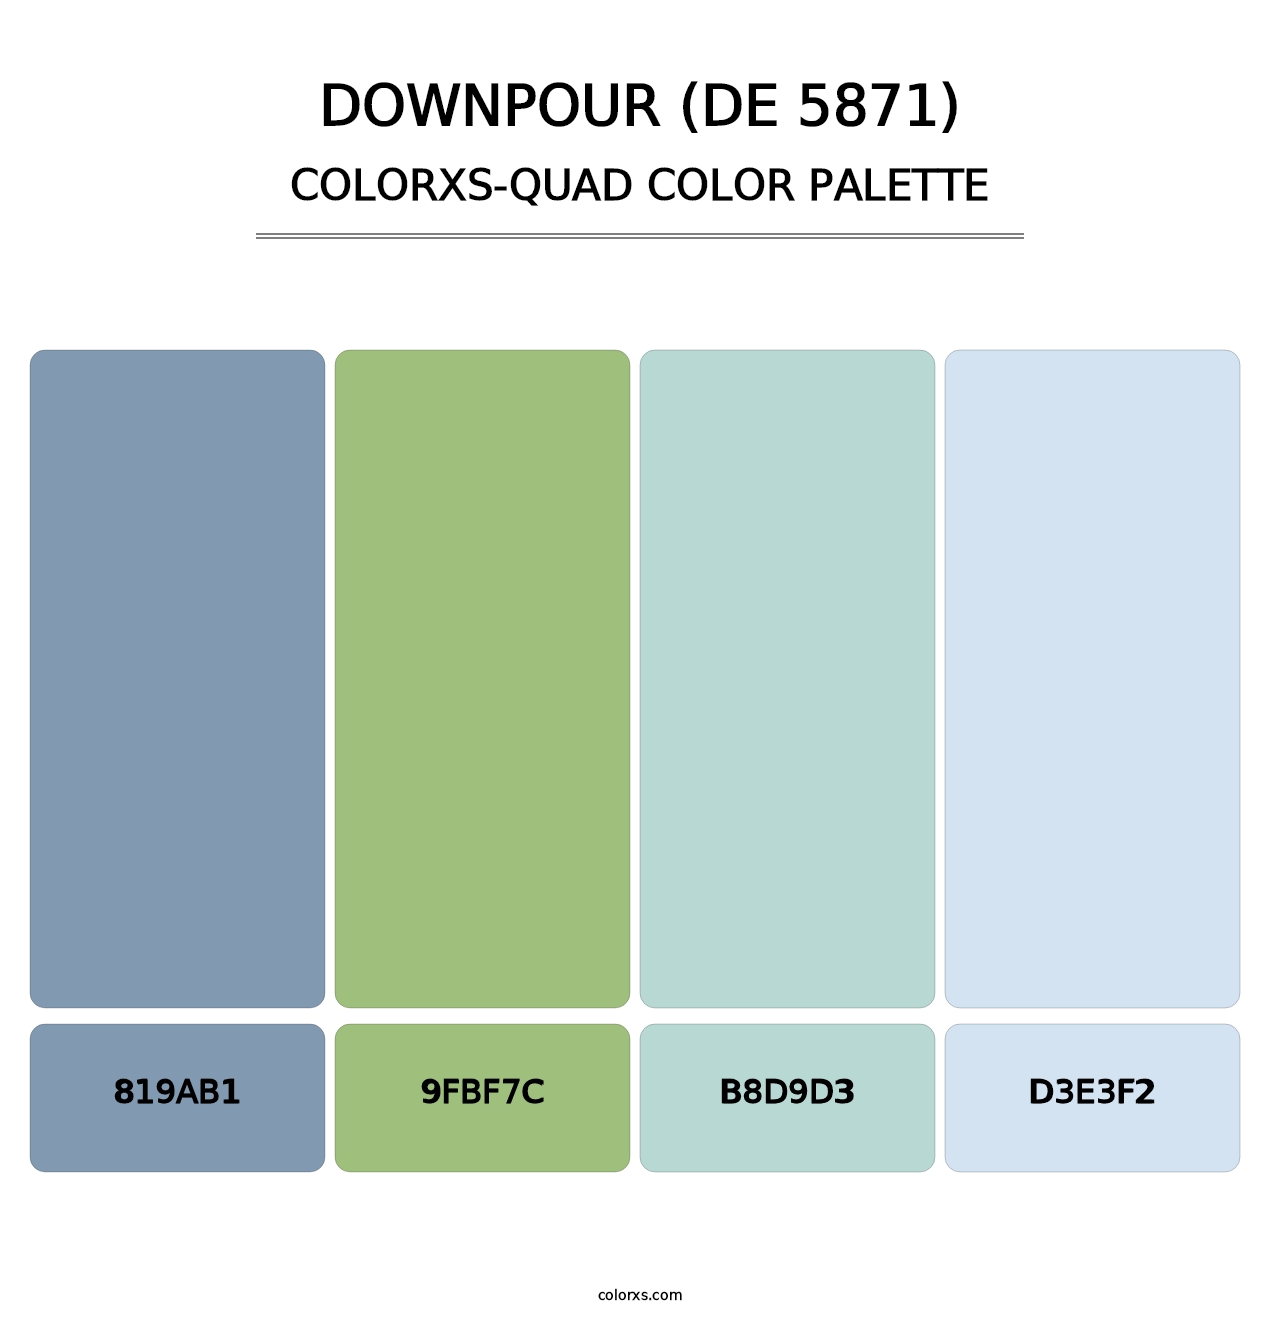 Downpour (DE 5871) - Colorxs Quad Palette